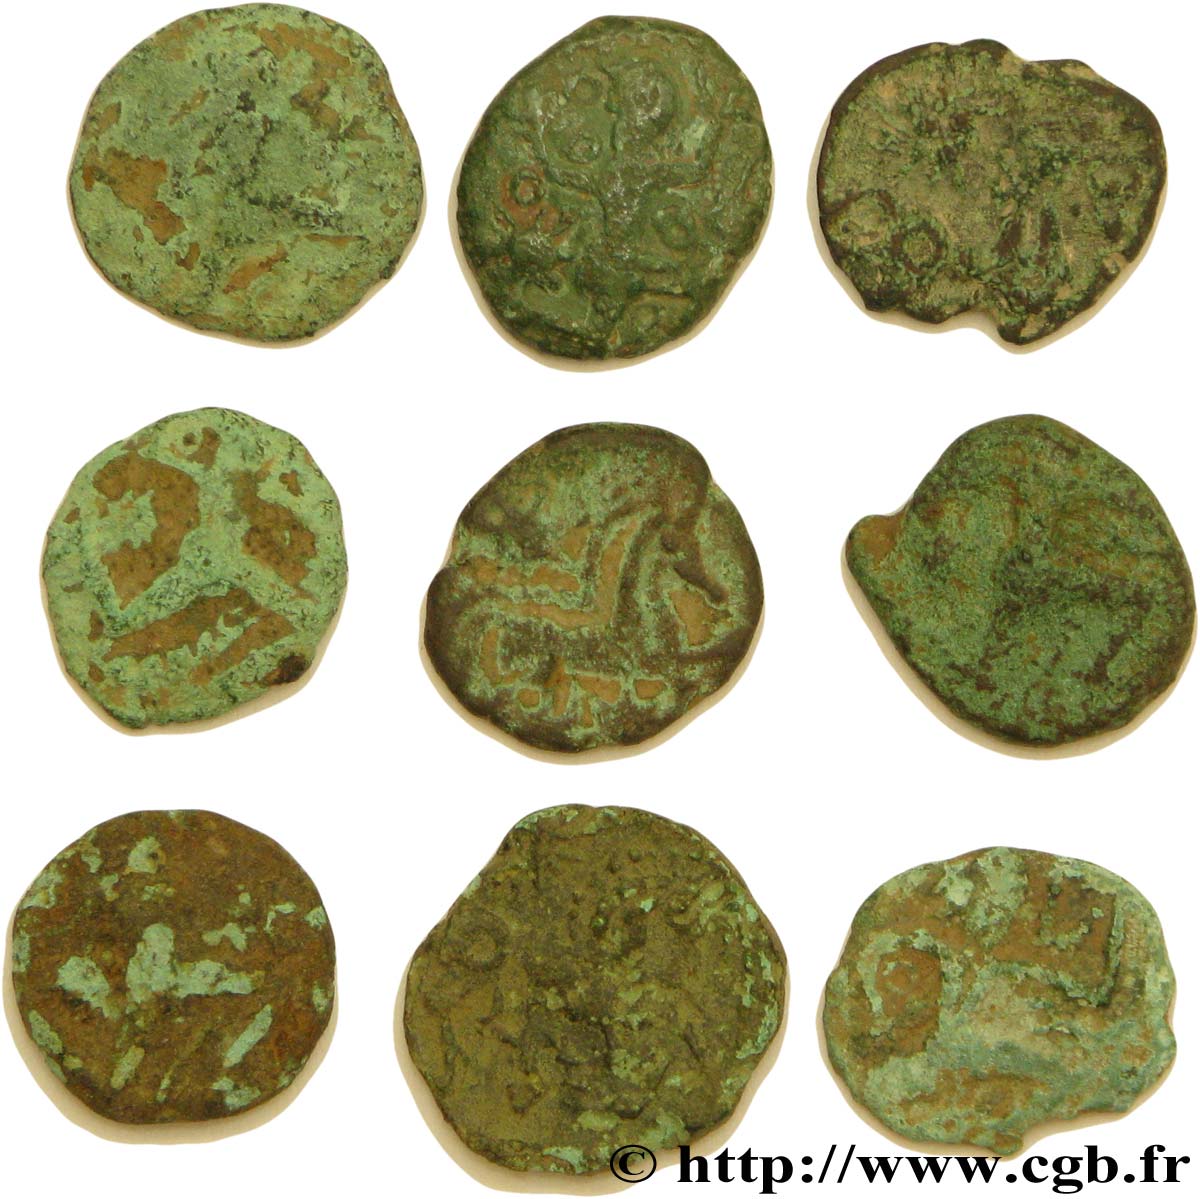 GALLIA - BELGICA - BELLOVACI (Regione di Beauvais) Lot d’étude - 9 bronzes au personnage courant et assimilés lotto